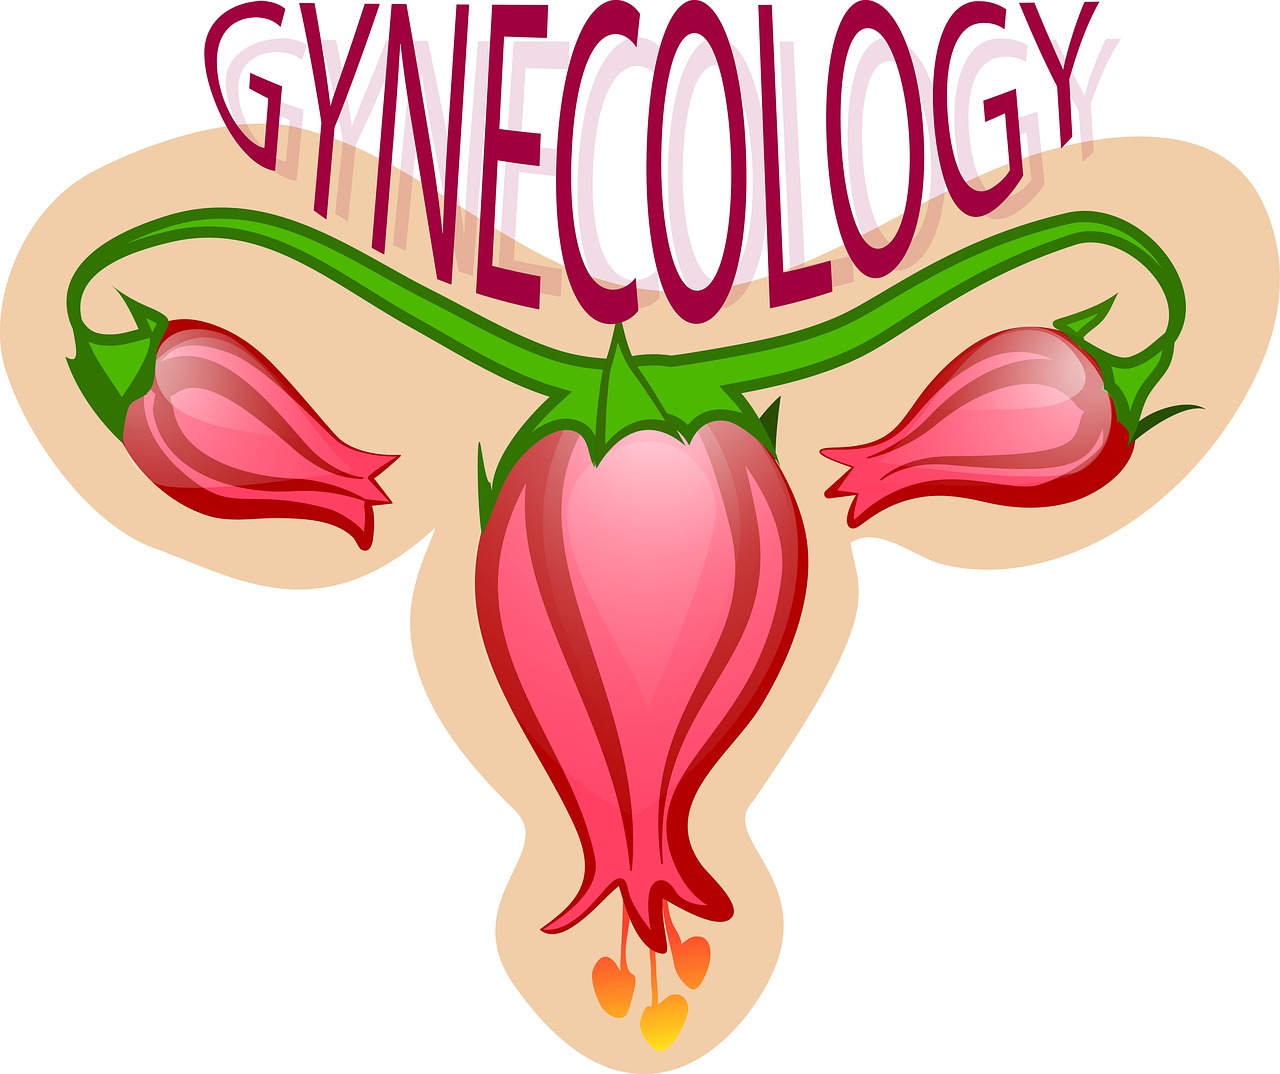 gynecology-2533145_1280.jpg